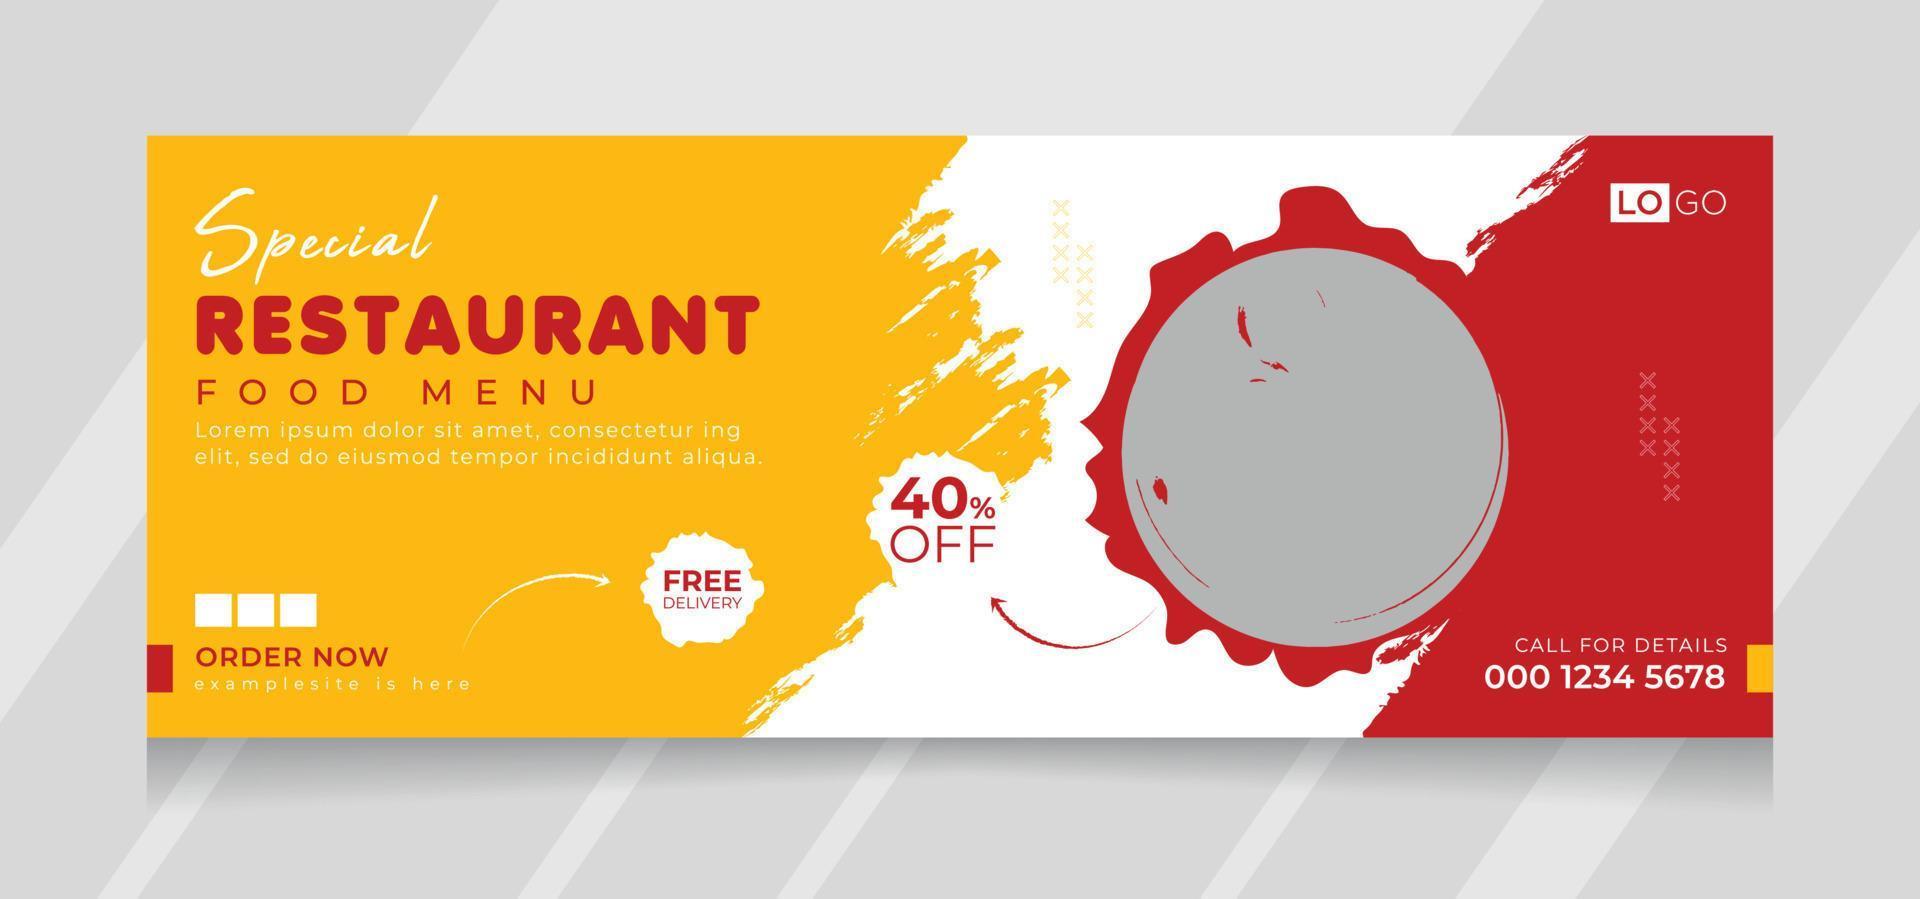 plantilla de banner de portada de redes sociales de menú de comida de restaurante vector